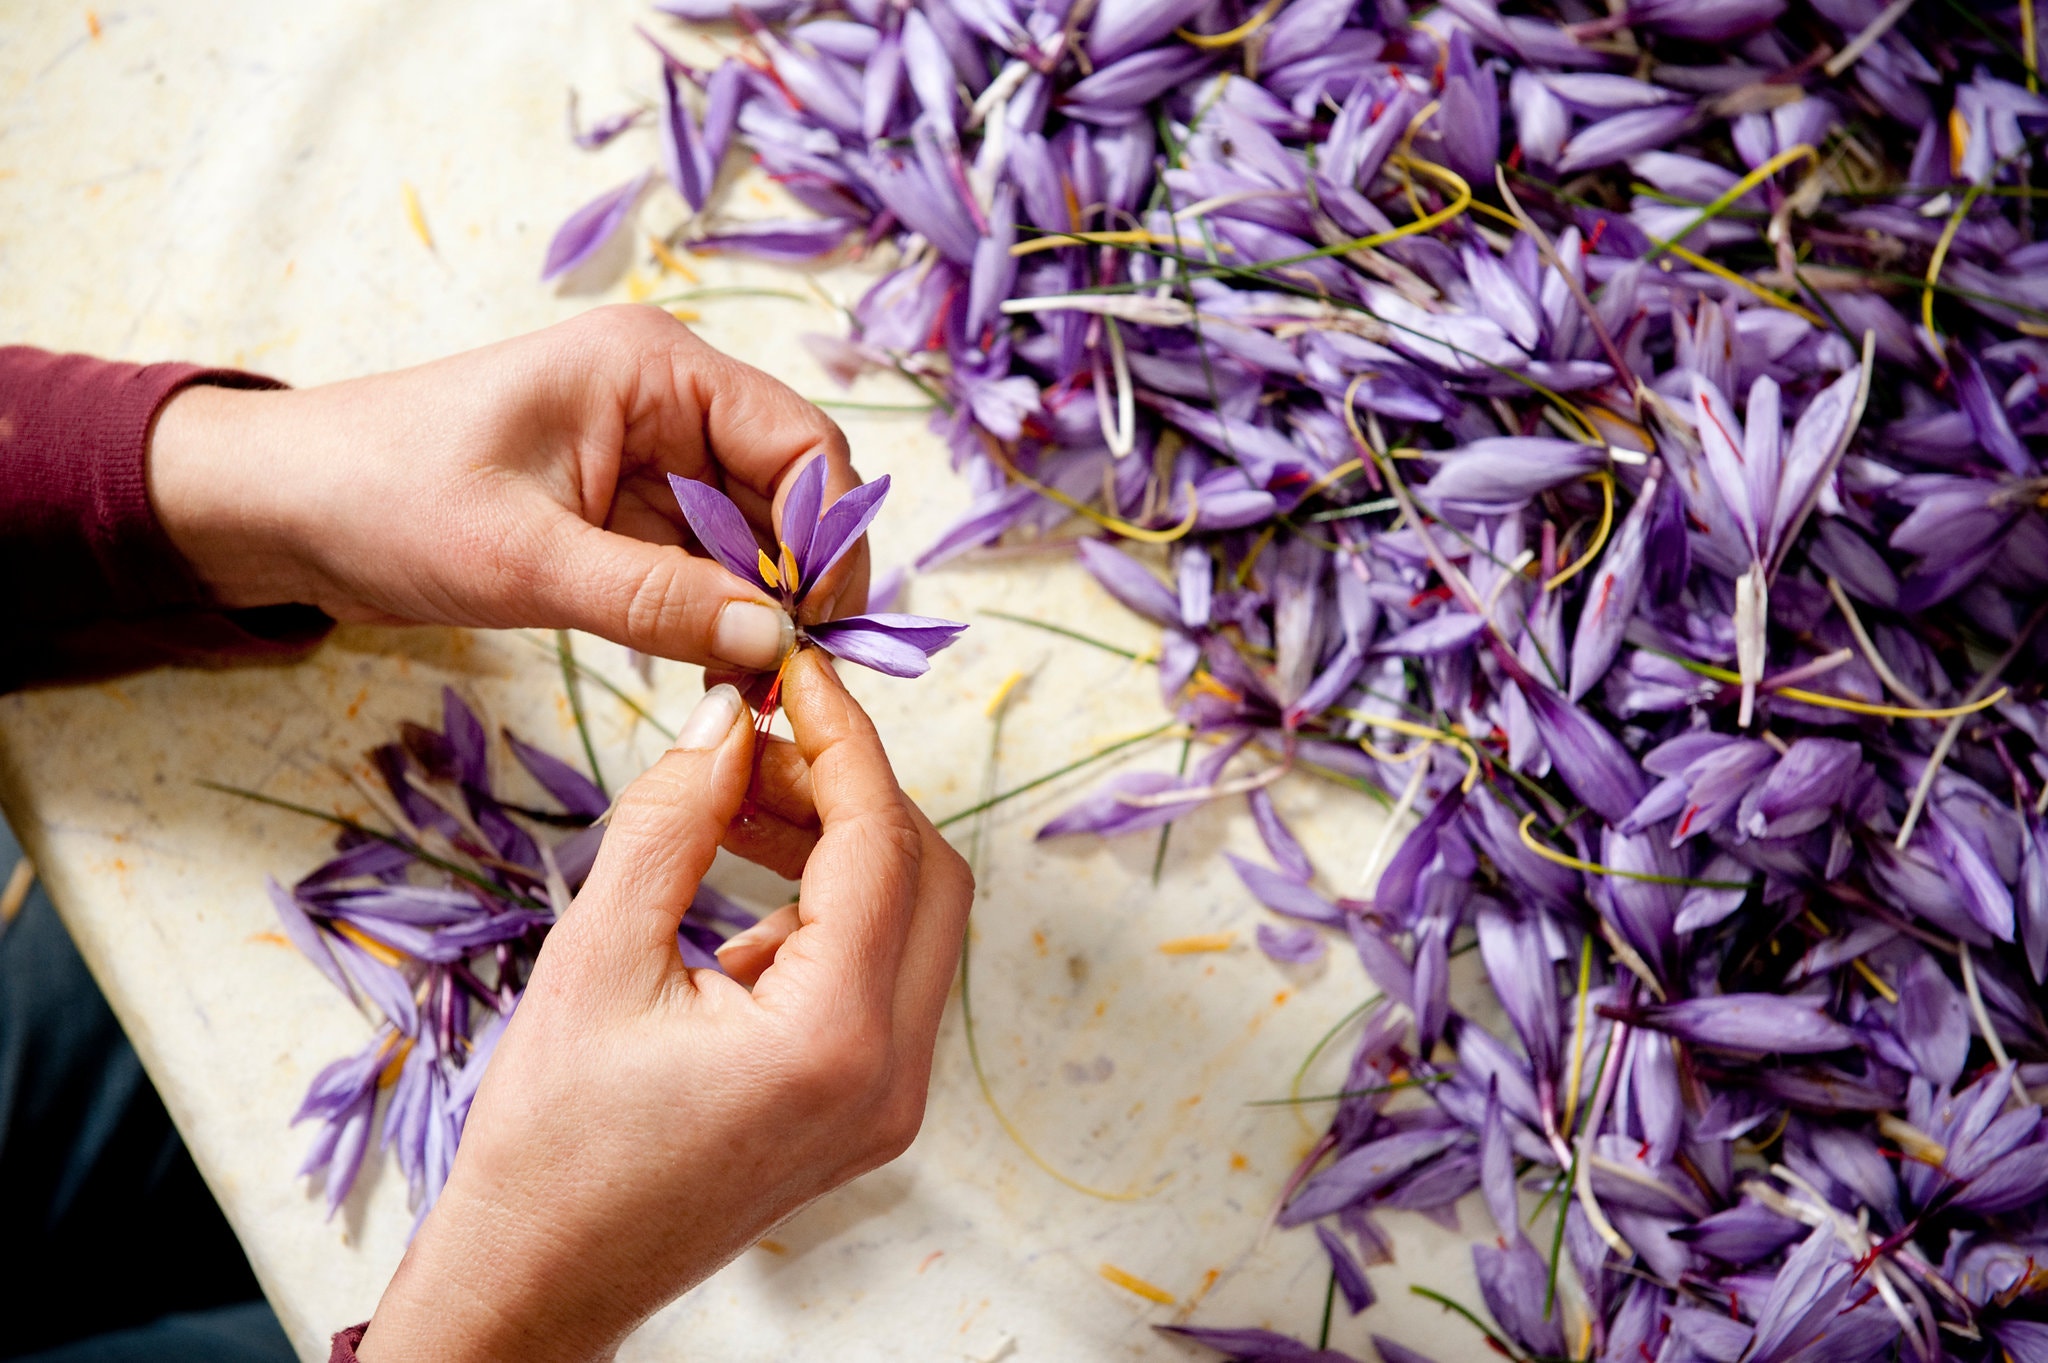 Cận cảnh quá trình thu hoạch saffron - thứ gia vị đắt nhất thế giới được mệnh danh “vàng đỏ“ có giá hàng tỷ đồng 1kg, từng được Nữ hoàng Ai Cập dùng để dưỡng nhan - Ảnh 3.